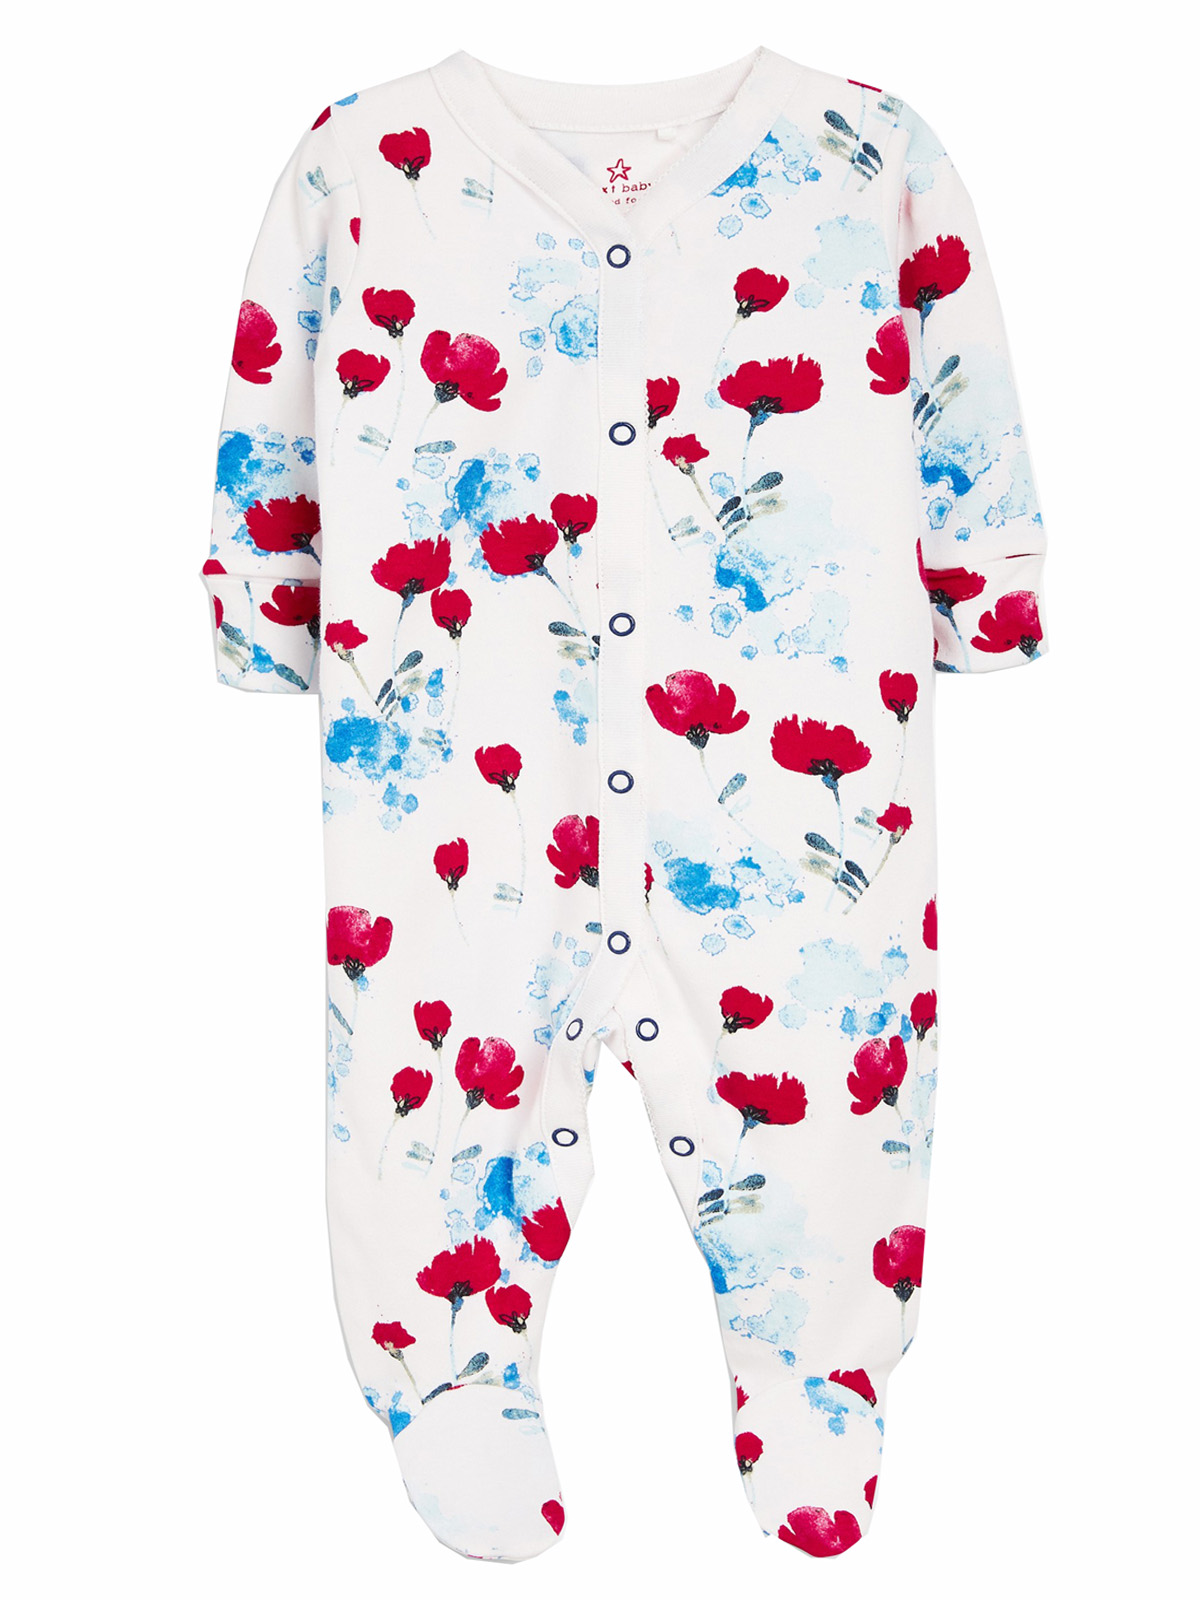 Tiny Poppy 100% Organic Cotton Baby Unisex Play N'Sleep Pajamas Set 